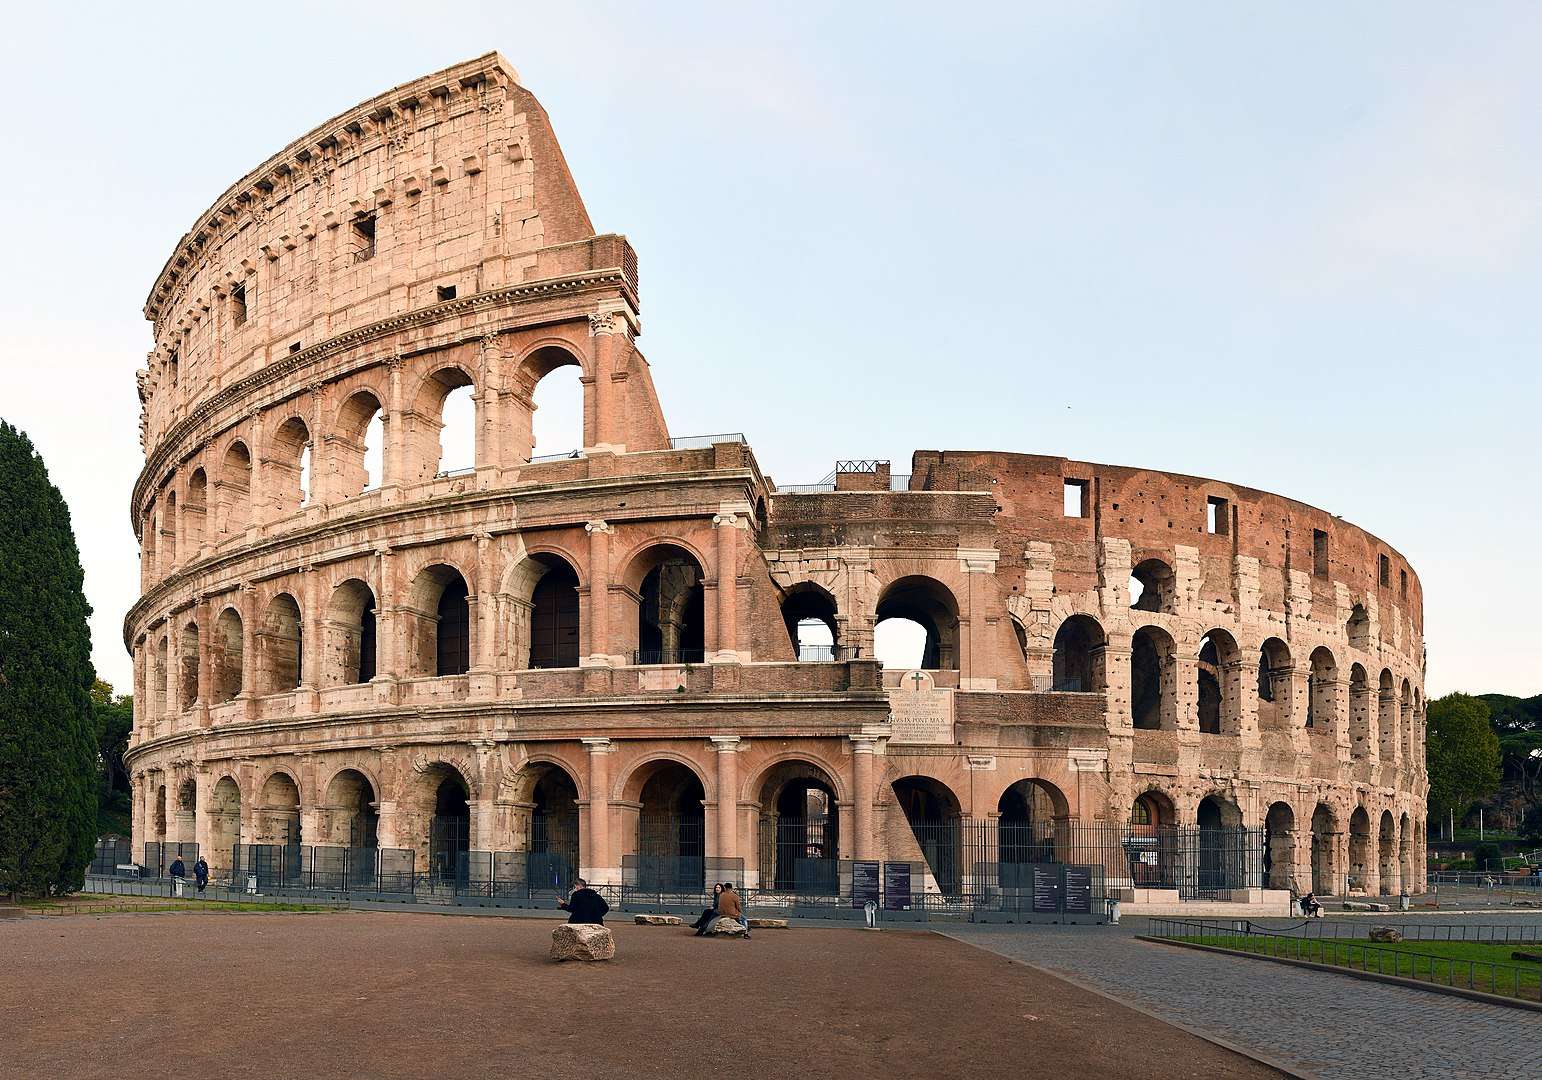 A Colosseum online puzzle